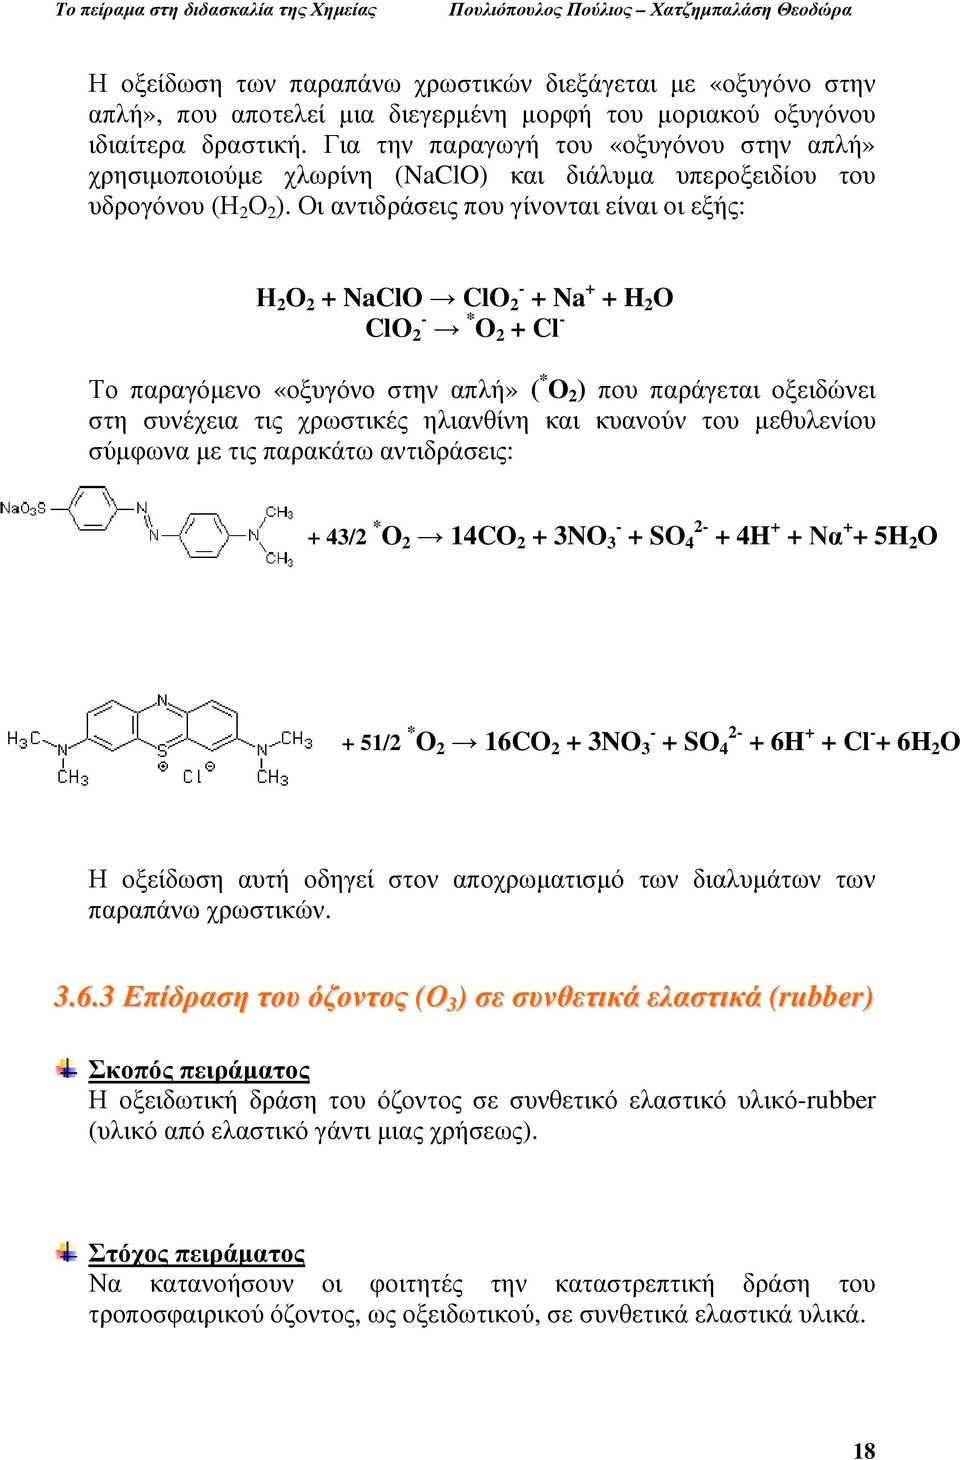 Οι αντιδράσεις που γίνονται είναι οι εξής: Η 2 Ο 2 + NaClO ClO 2 - + Na + + H 2 O ClO 2 - * O 2 + Cl - Το παραγόµενο «οξυγόνο στην απλή» ( * O 2 ) που παράγεται οξειδώνει στη συνέχεια τις χρωστικές